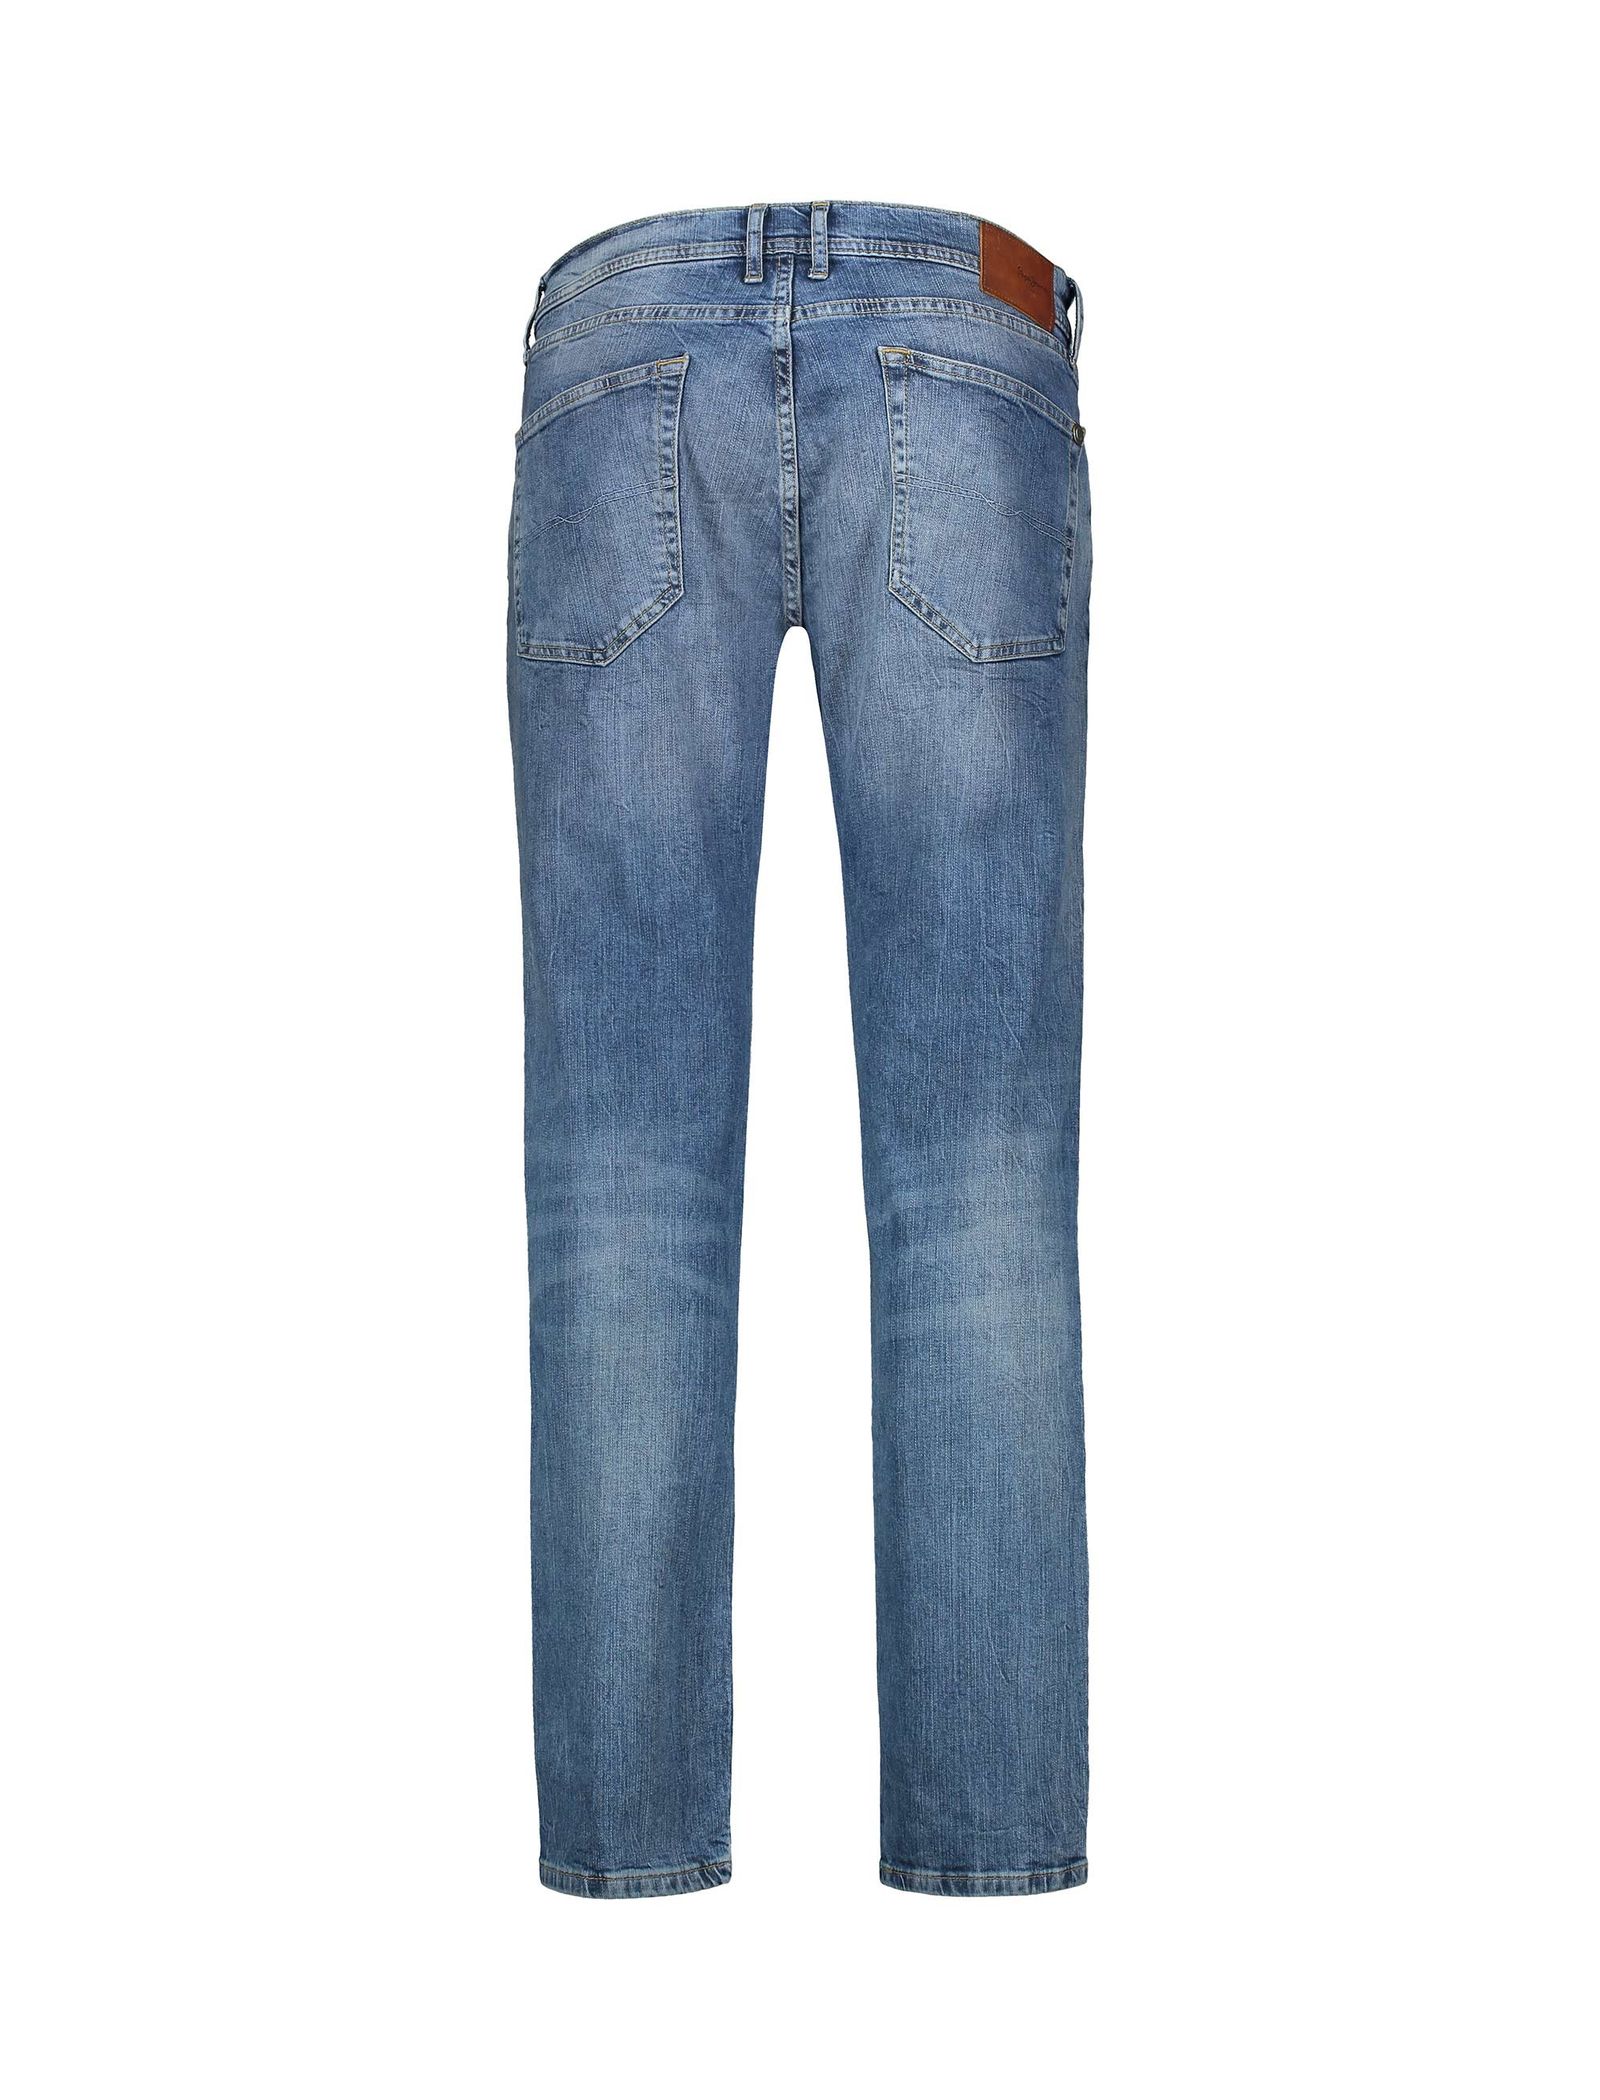 شلوار جین راسته مردانه - پپه جینز - آبي تيره - 3